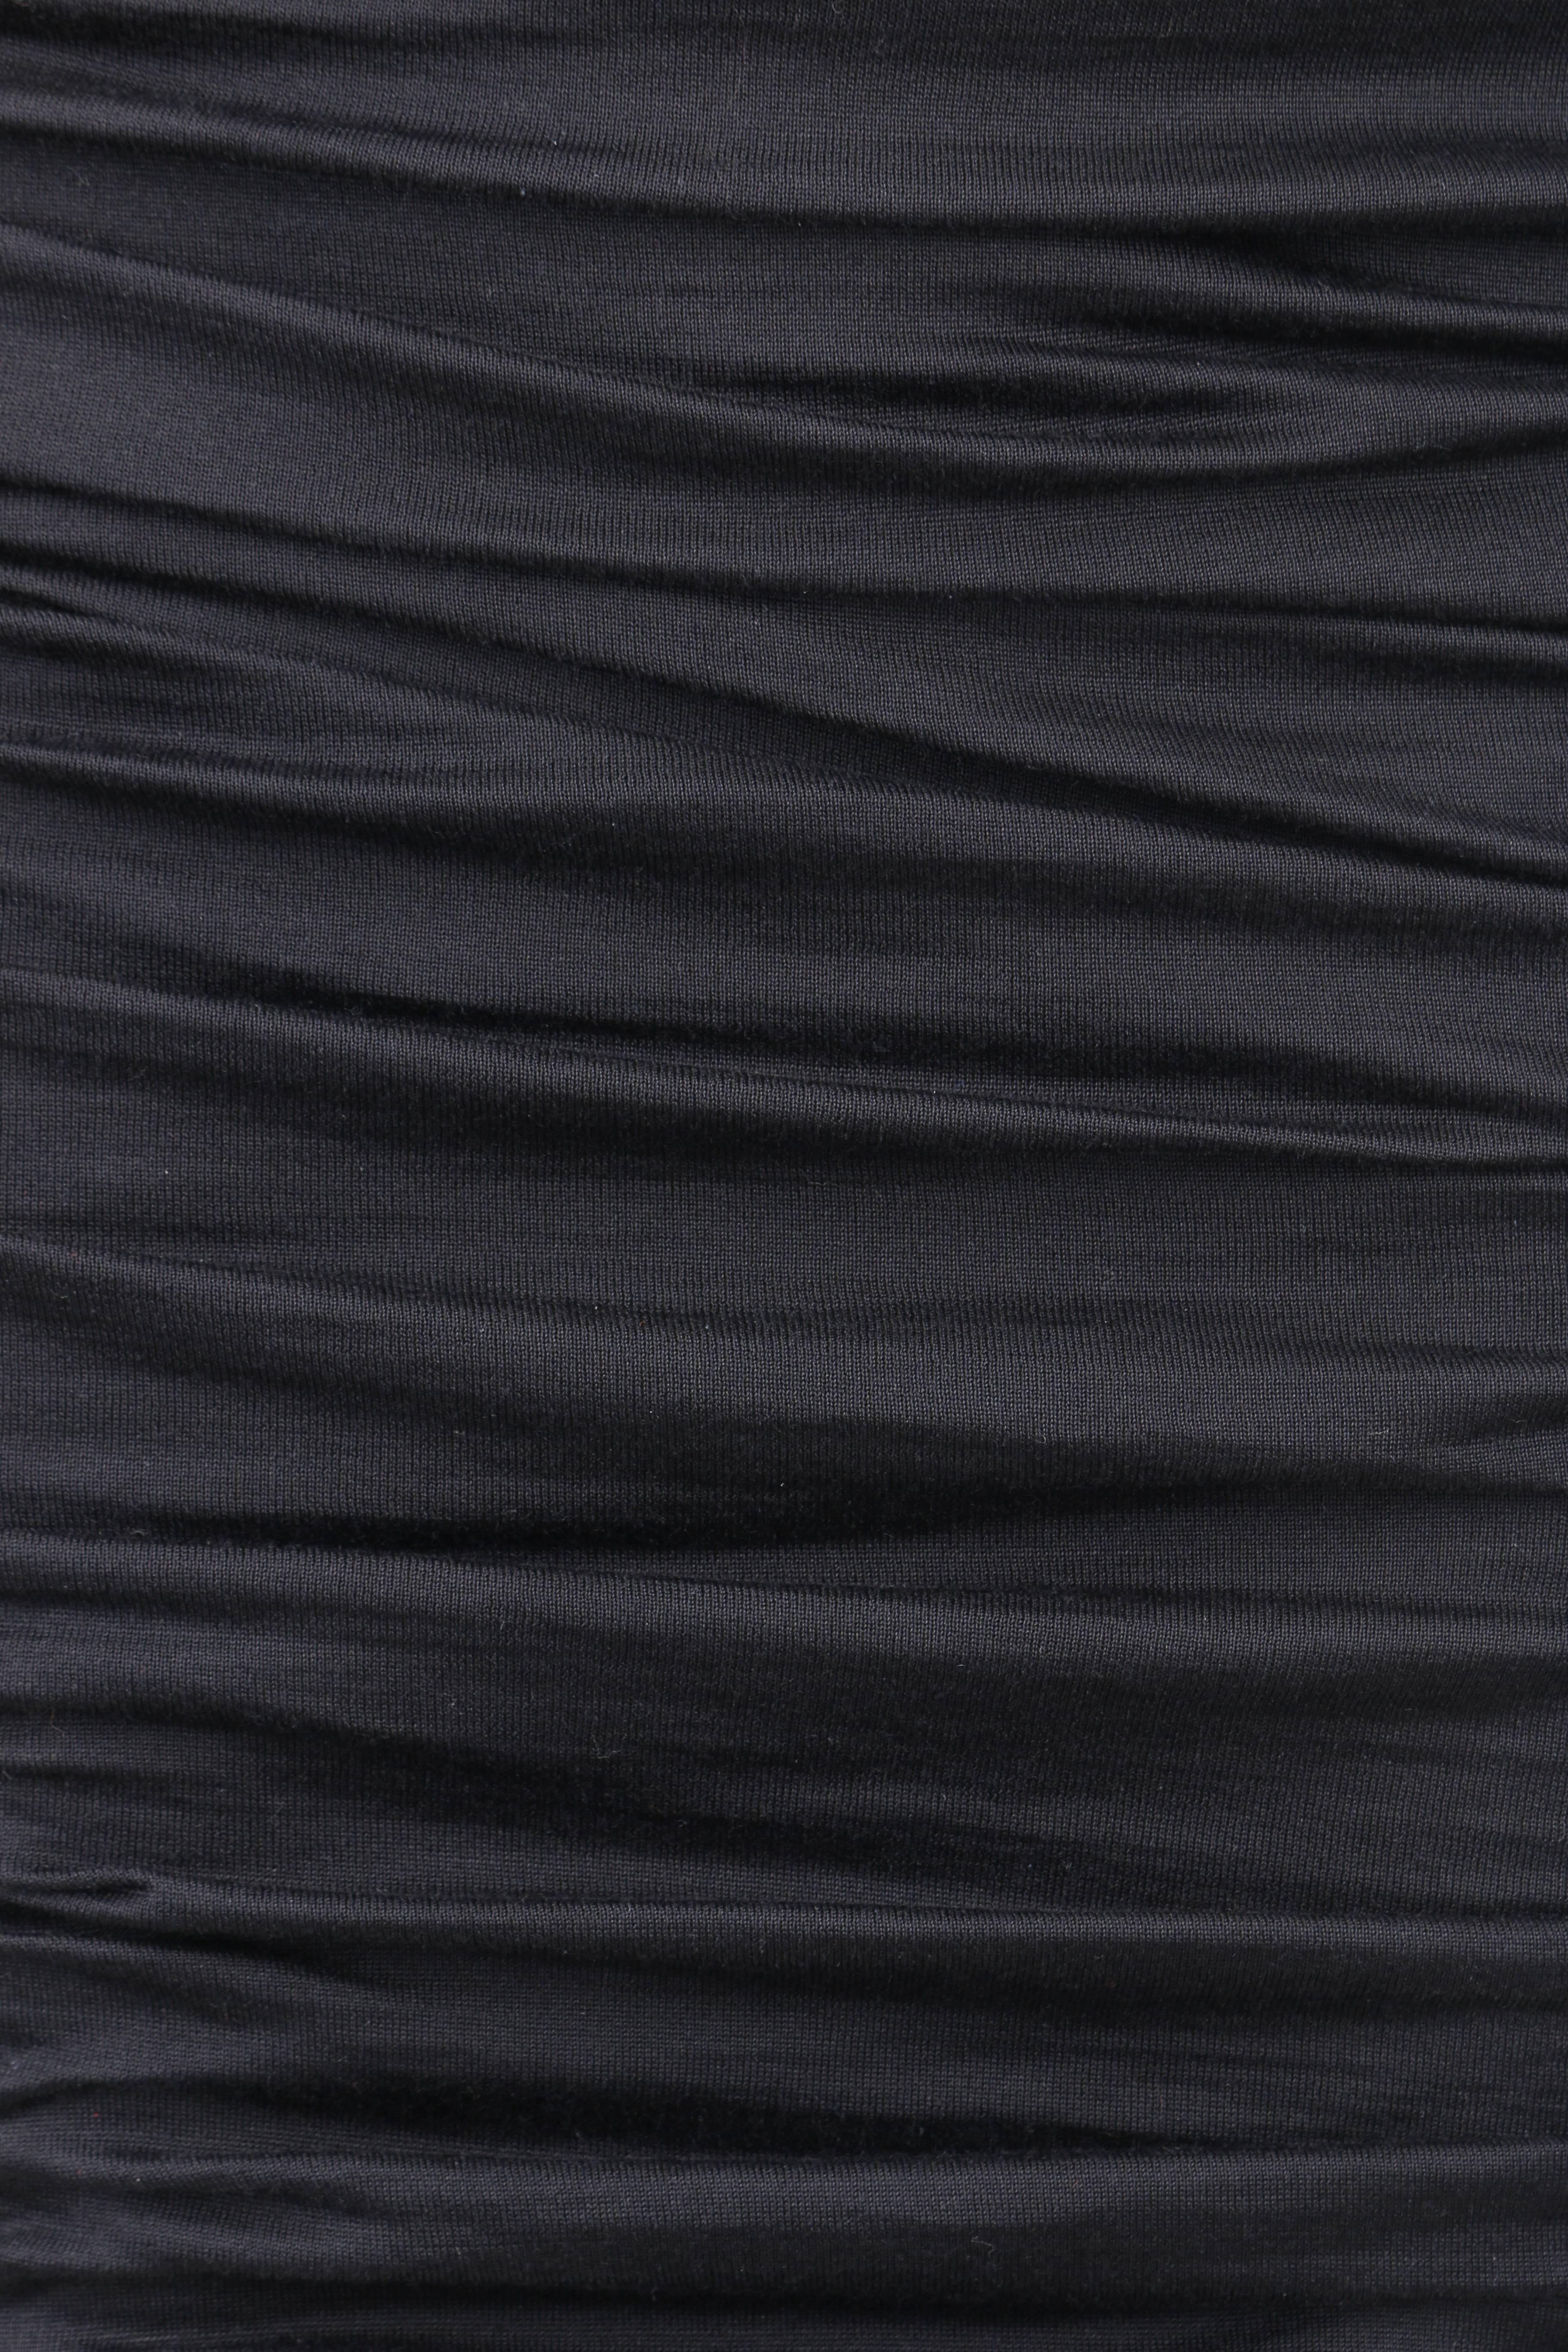 Women's GIAMBATTISTA VALLI Black Silk Jersey Knit Ruched Bodycon Cocktail Dress